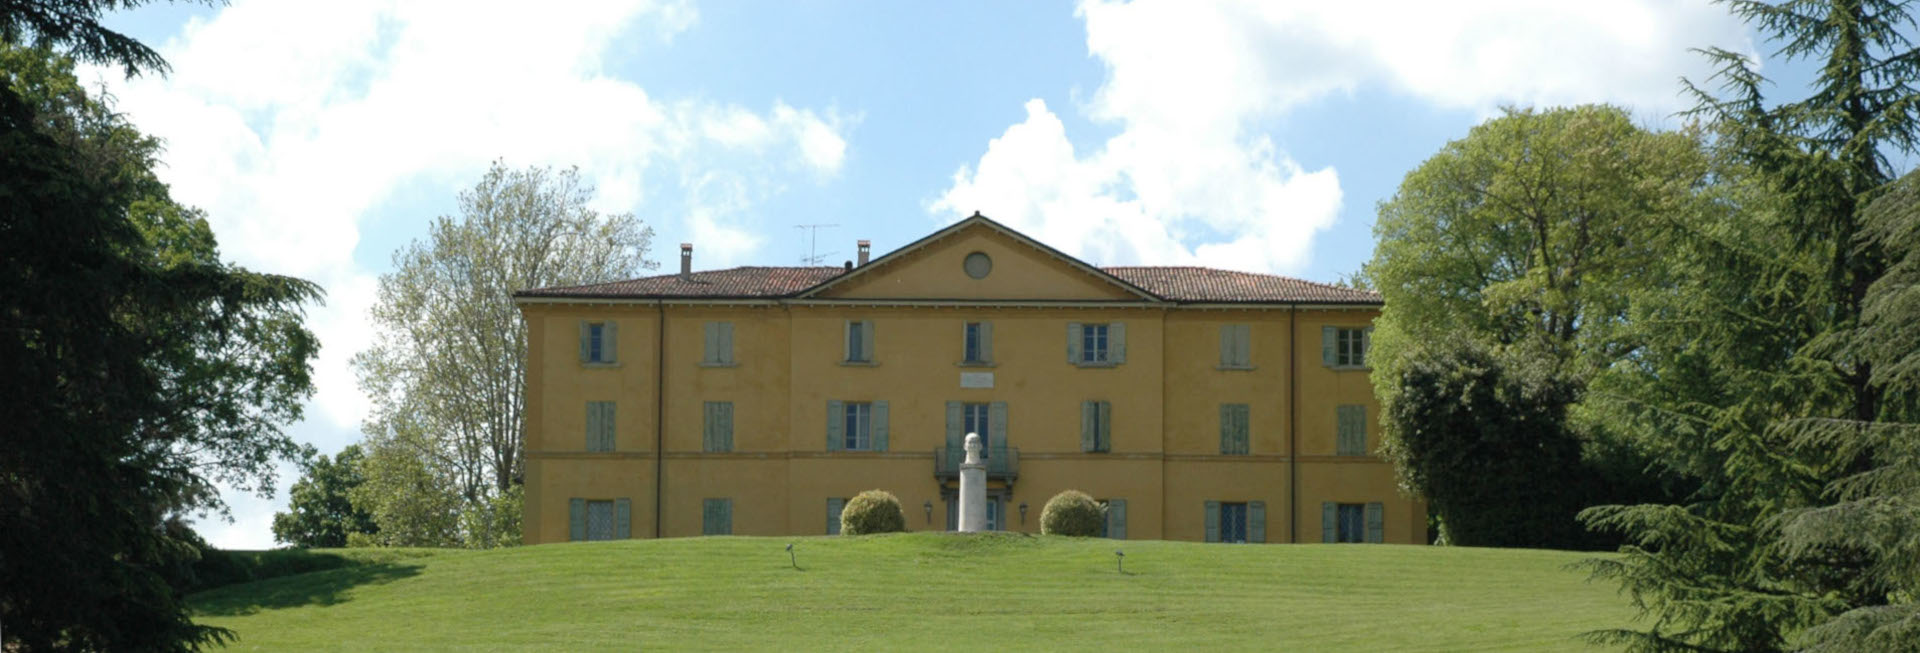 Villa Grifone a Pontecchio Marconi